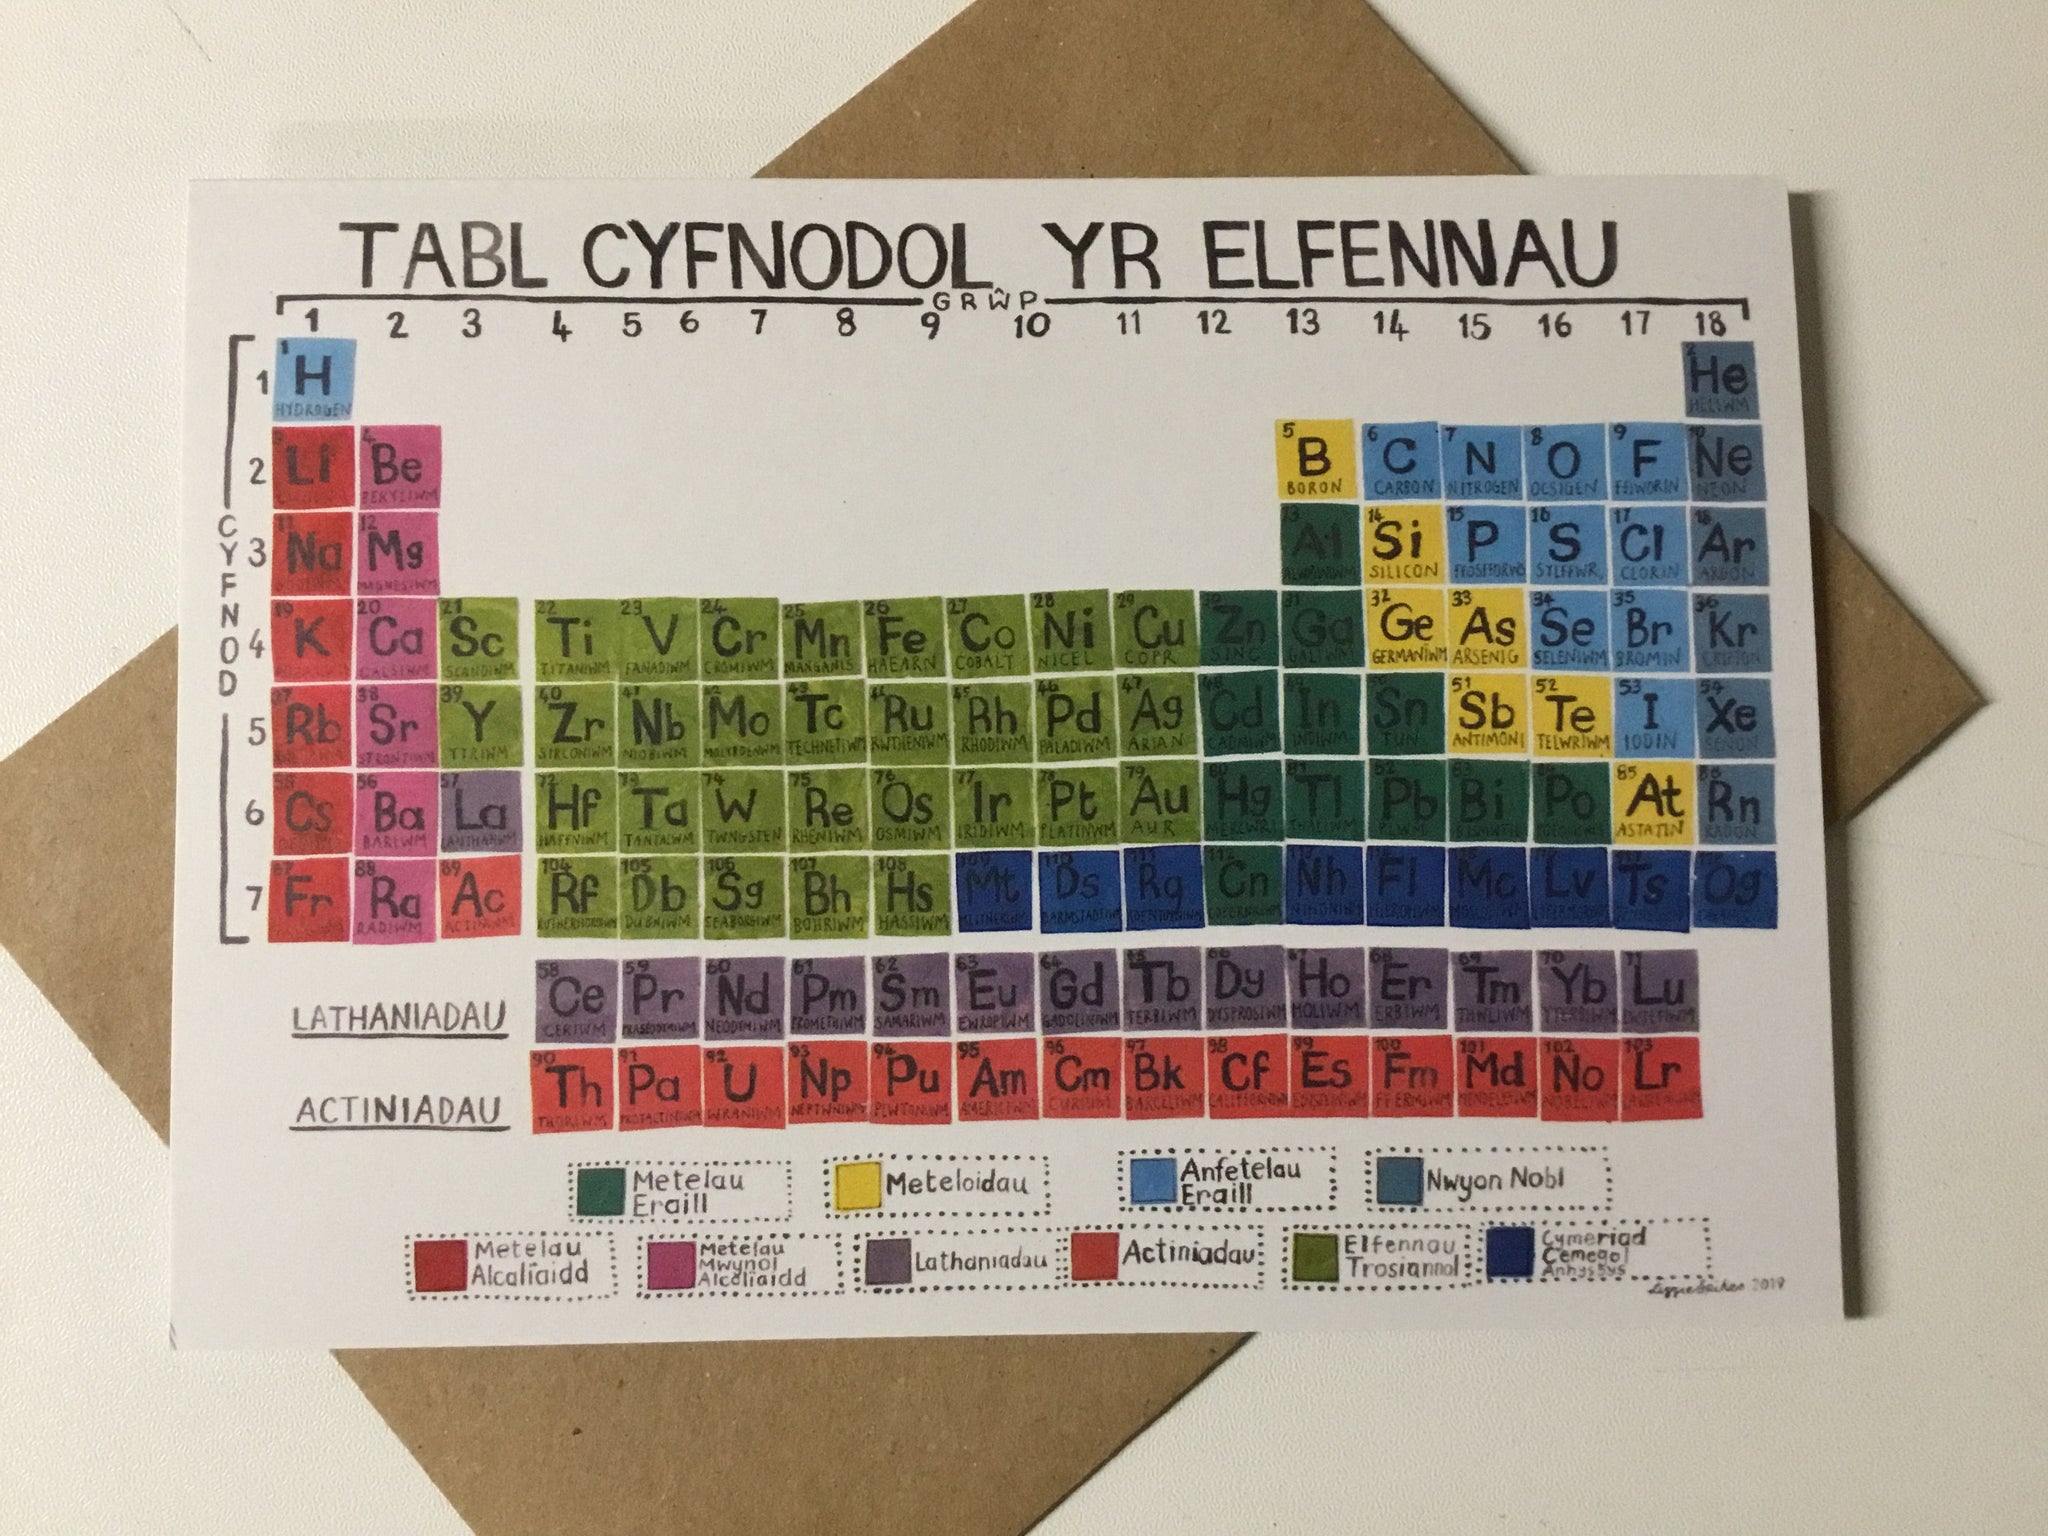 Individual Card 'Tabl Cyfnodol yr Elfennau' (Periodic Table of the Elements) by Lizzie Spikes